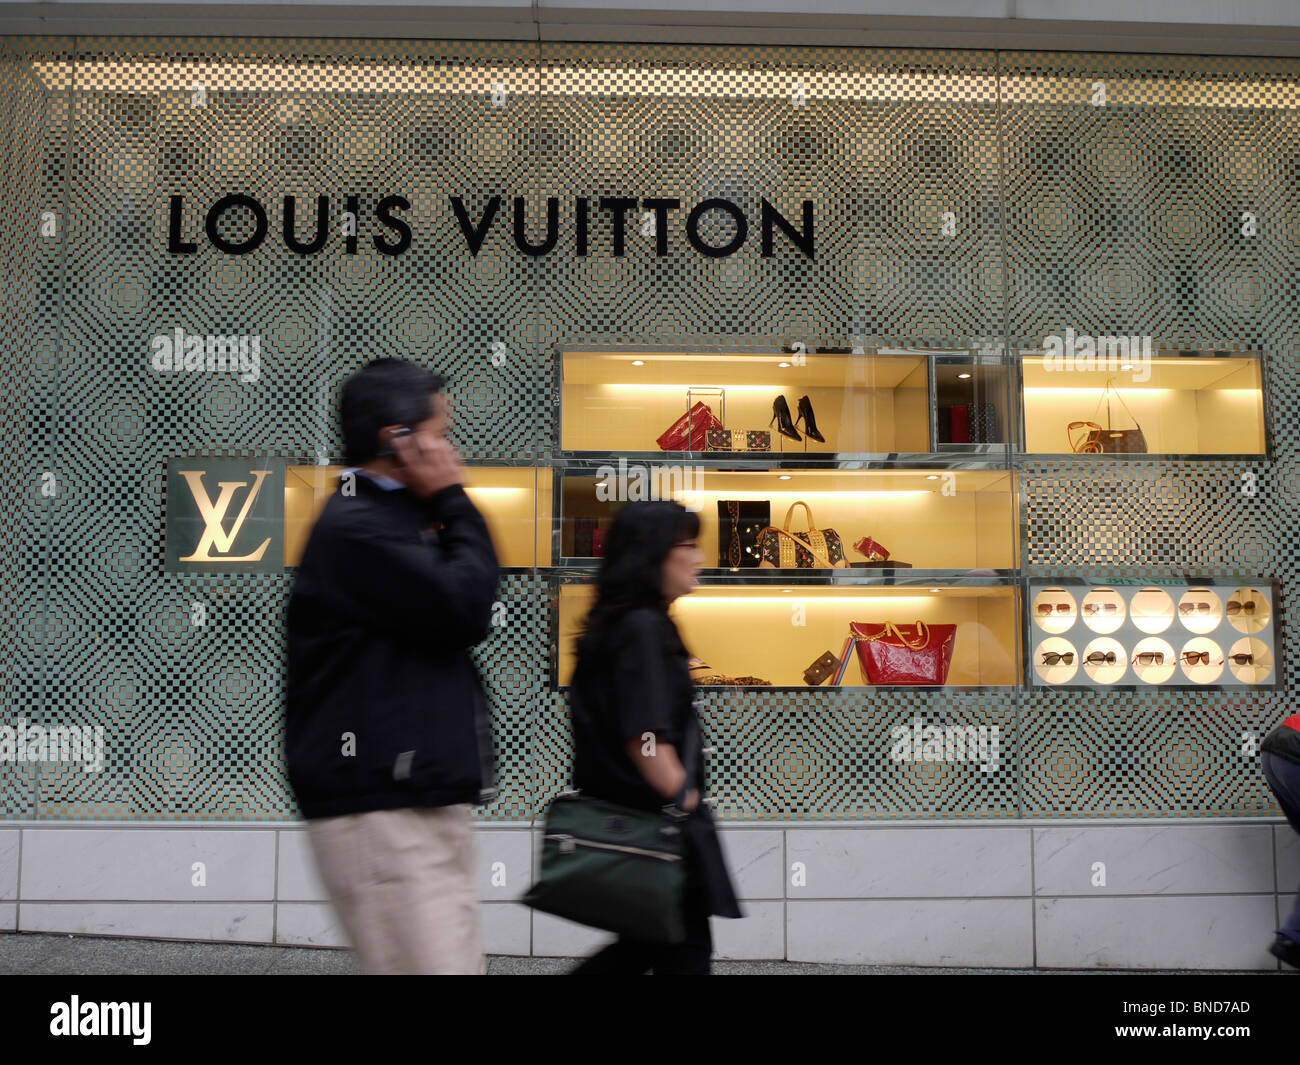 Louis Vuitton store, shop retail outlet Vancouver Stock Photo - Alamy